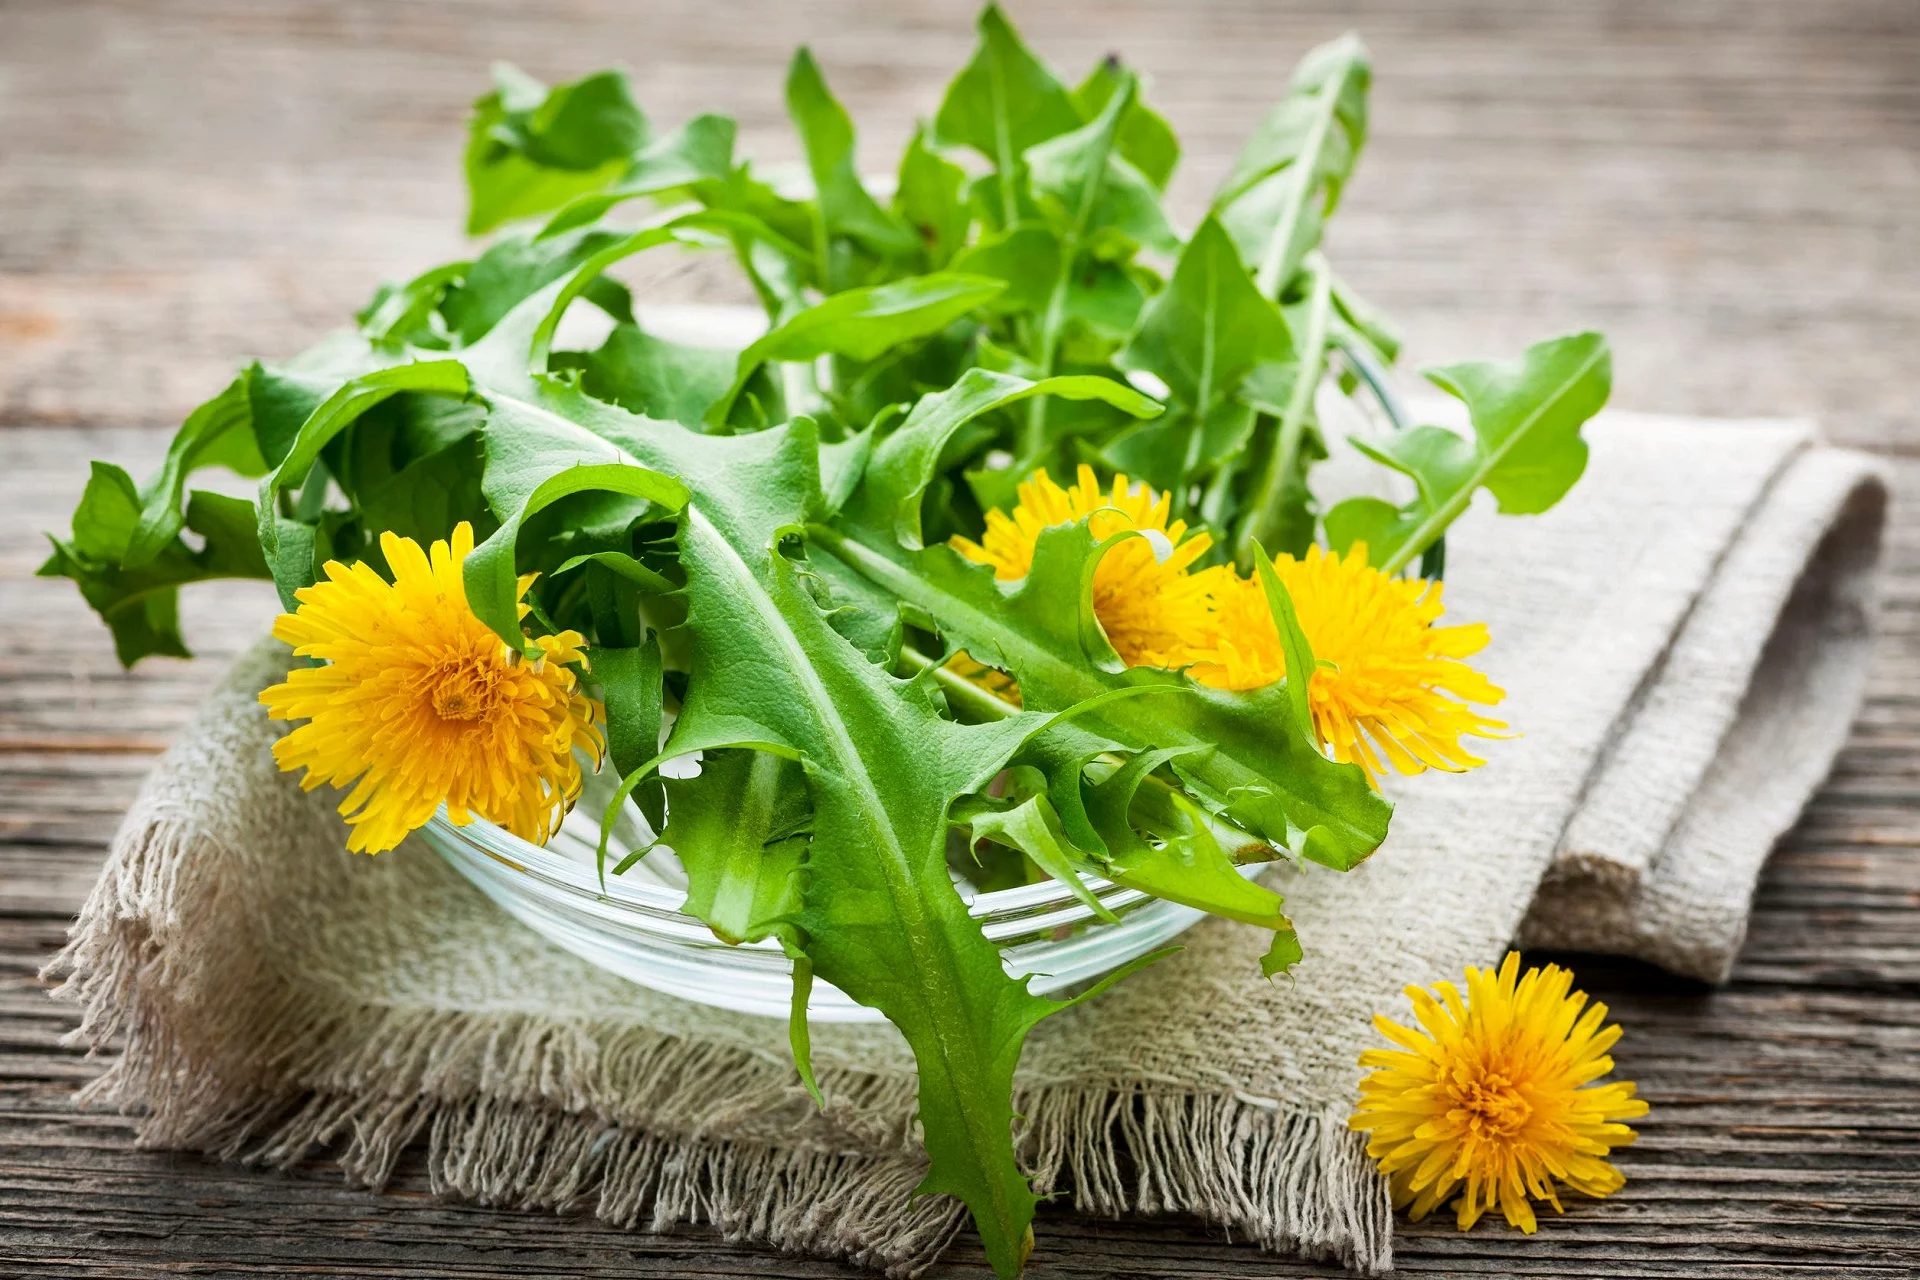 7 Surprising Health Benefits of Dandelion